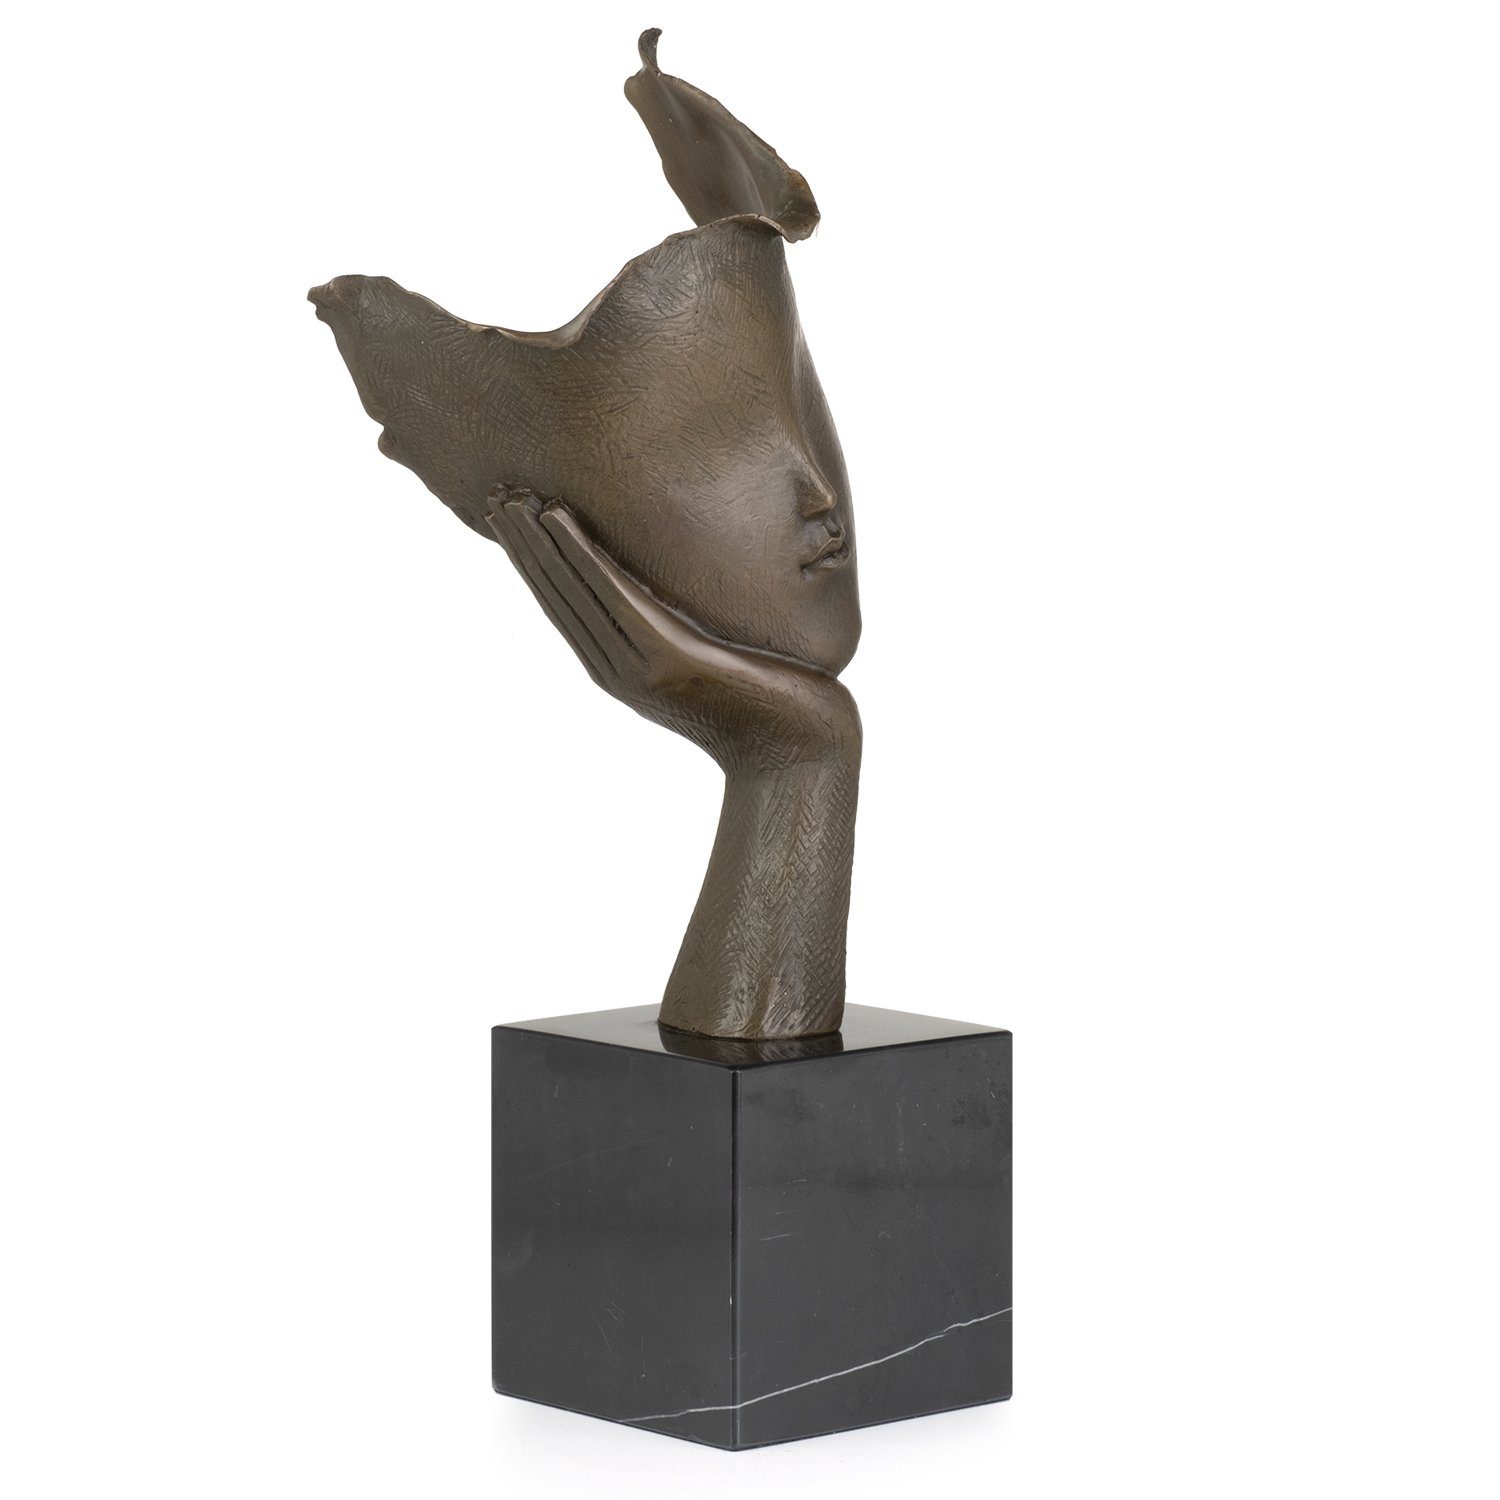 Moritz Skulptur Bronzefigur Abstraktes Gesicht nachdenklich, Figuren Statue Skulpturen Antik-Stil